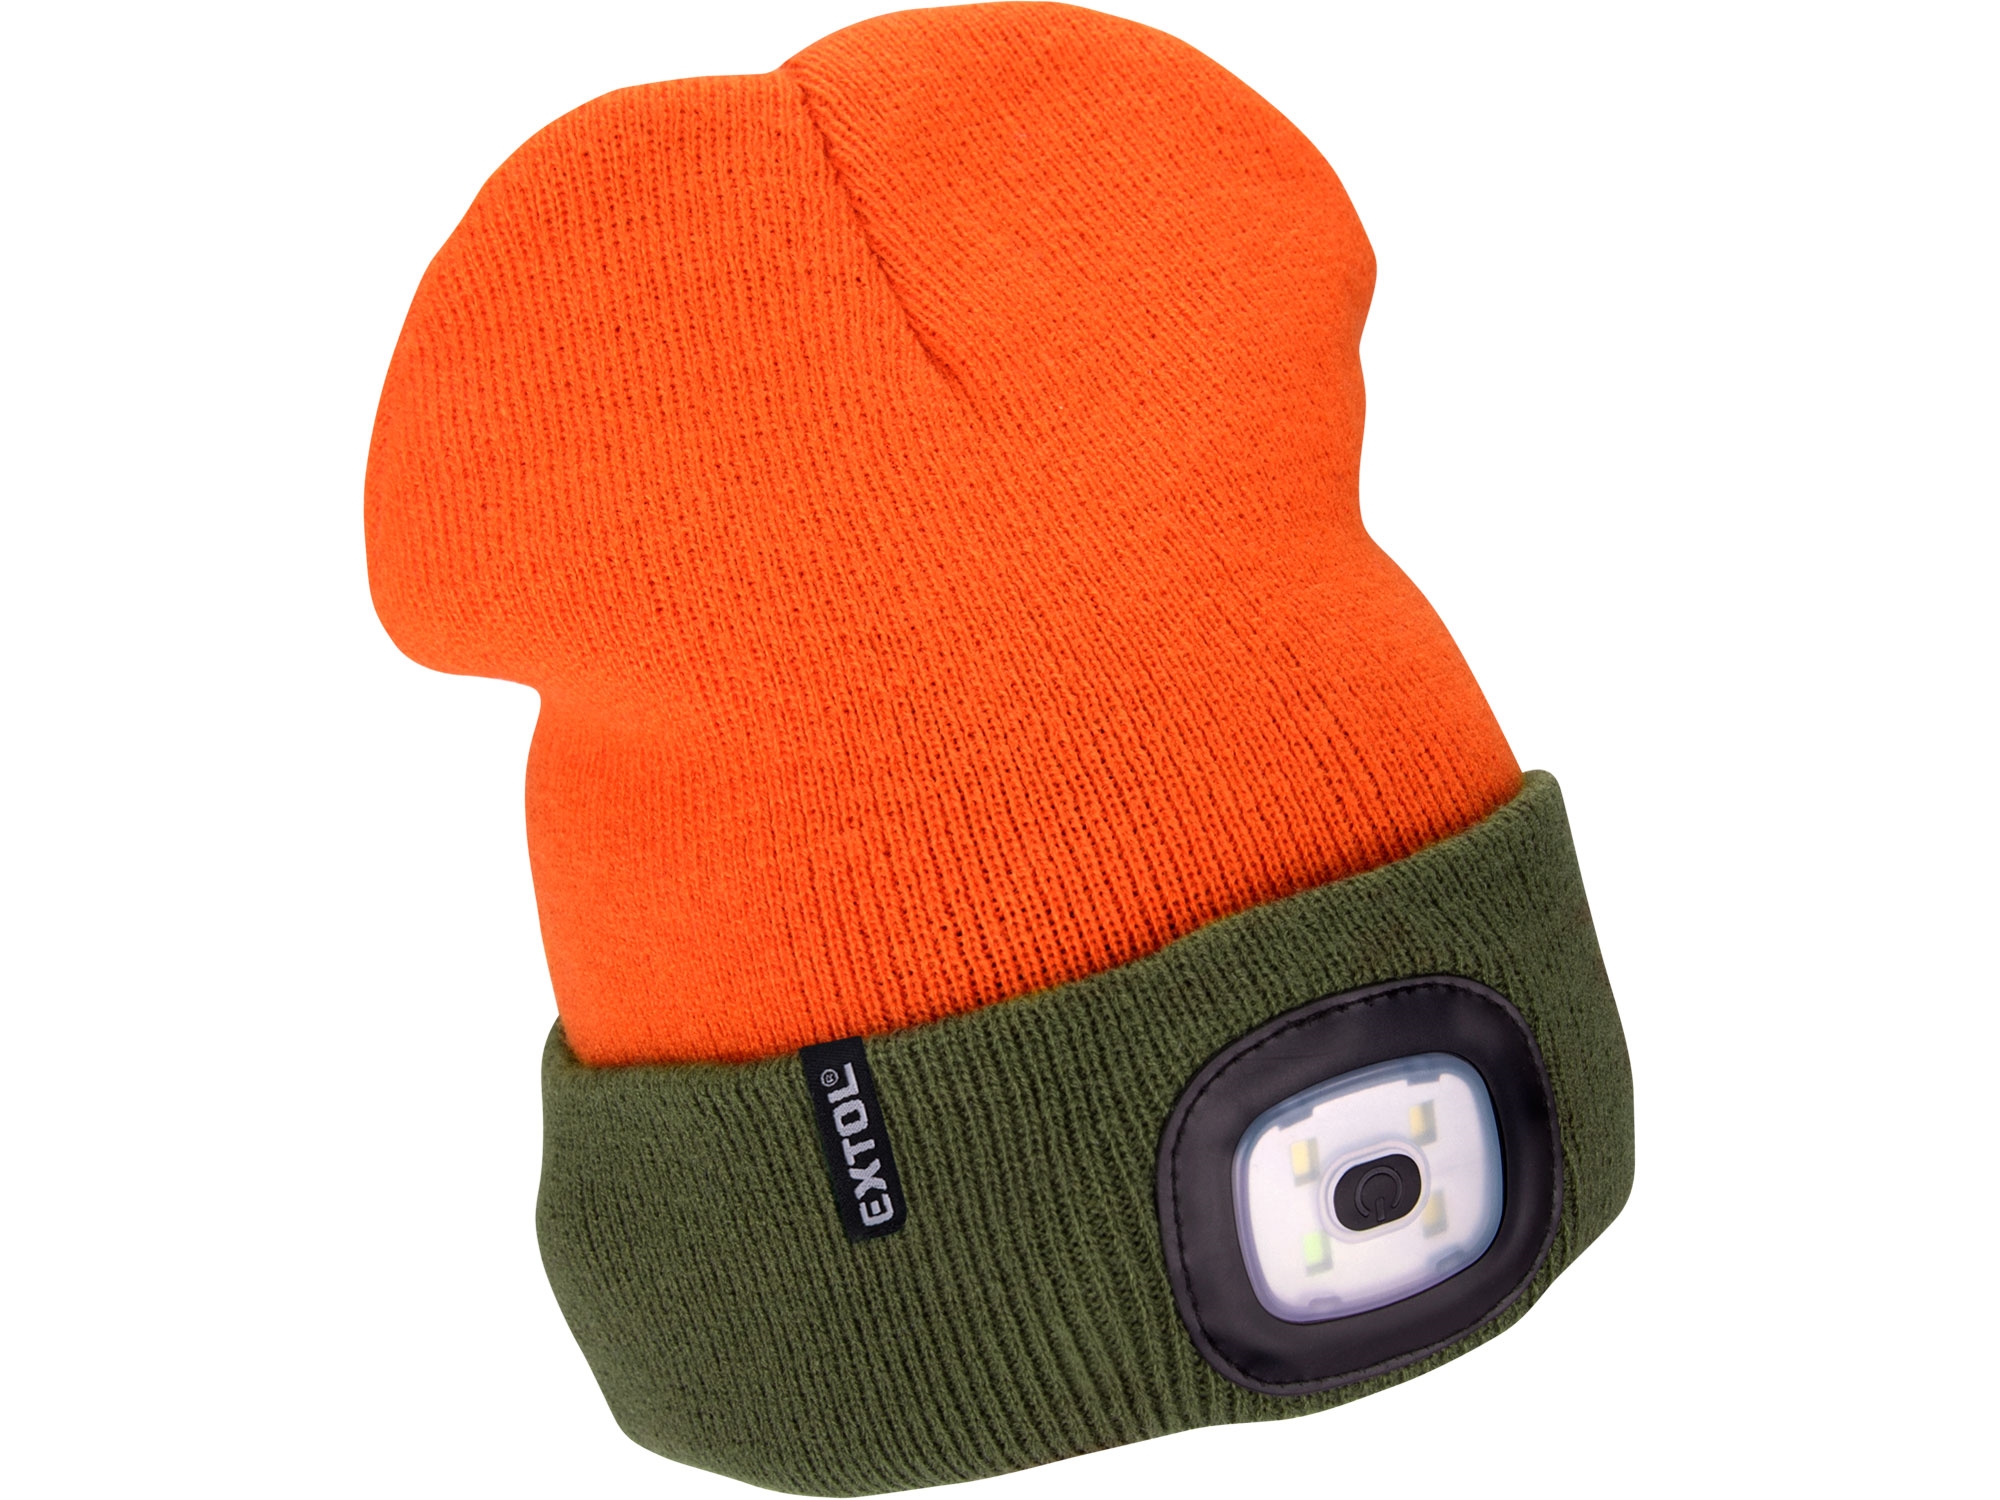 čepice s čelovkou 4x45lm, USB nabíjení, fluorescentní oranžová/khaki zelená, oboustranná, univerzální velikost